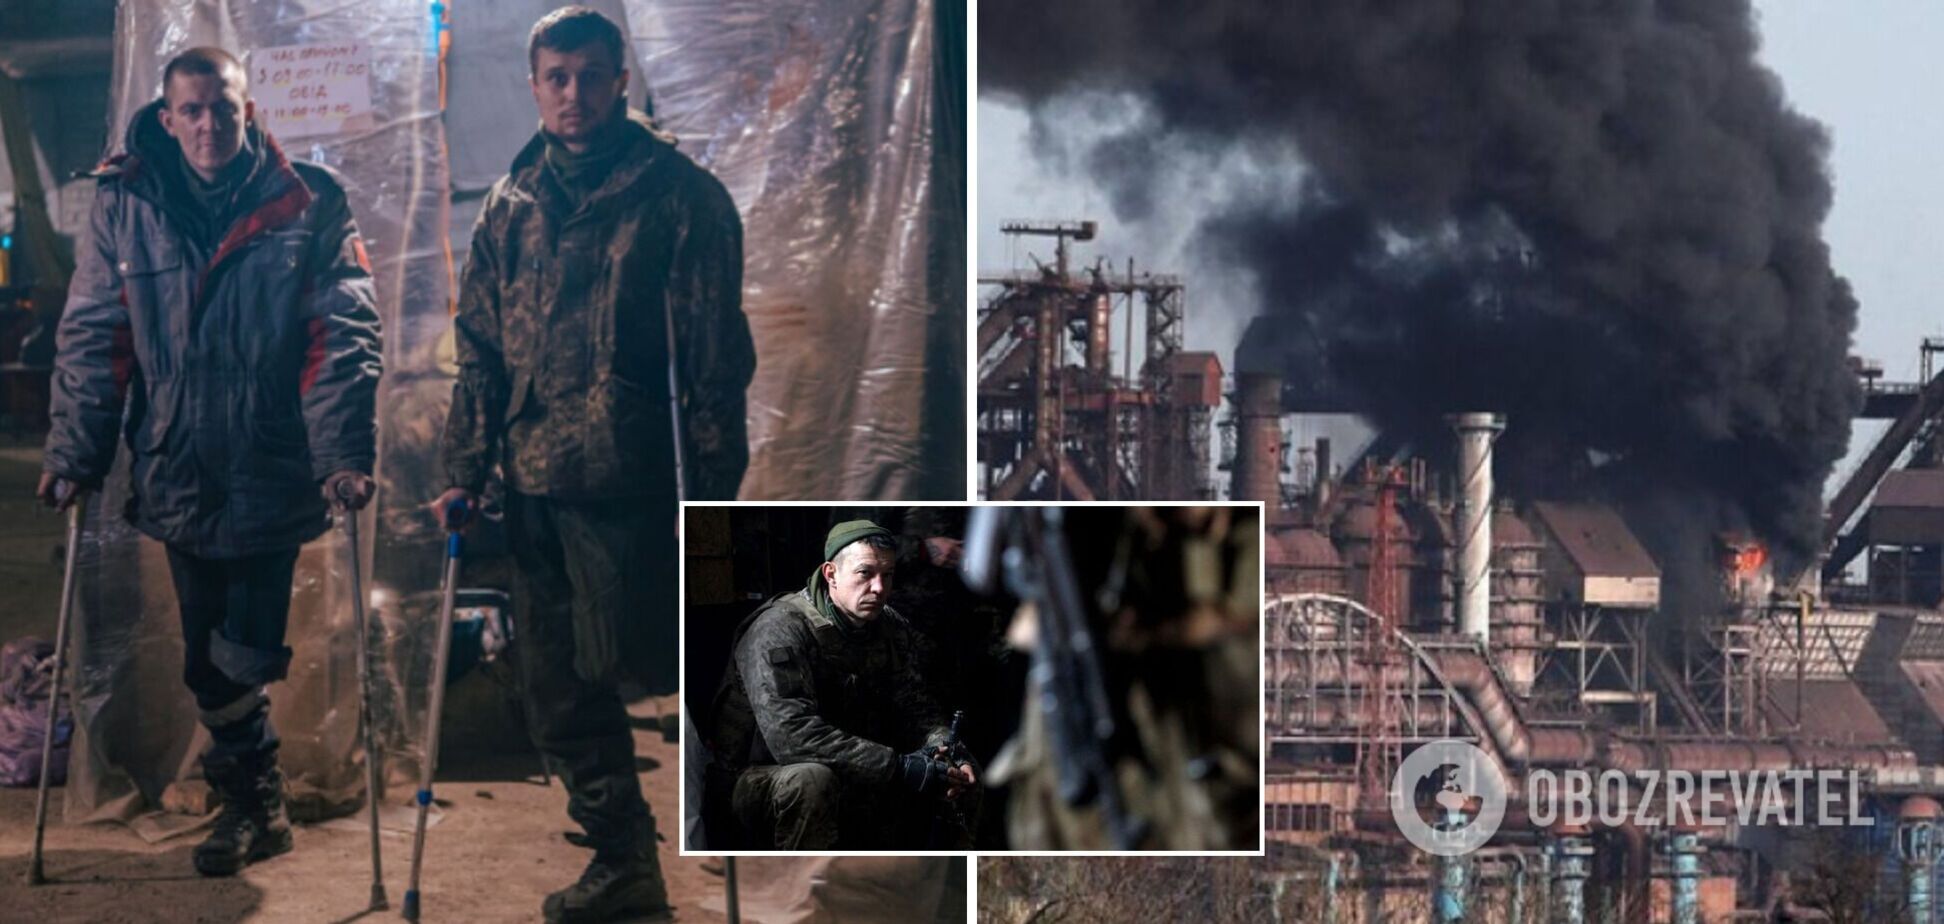 Кучма, Ющенко и Порошенко призвали мир помочь властям спасти защитников 'Азовстали'